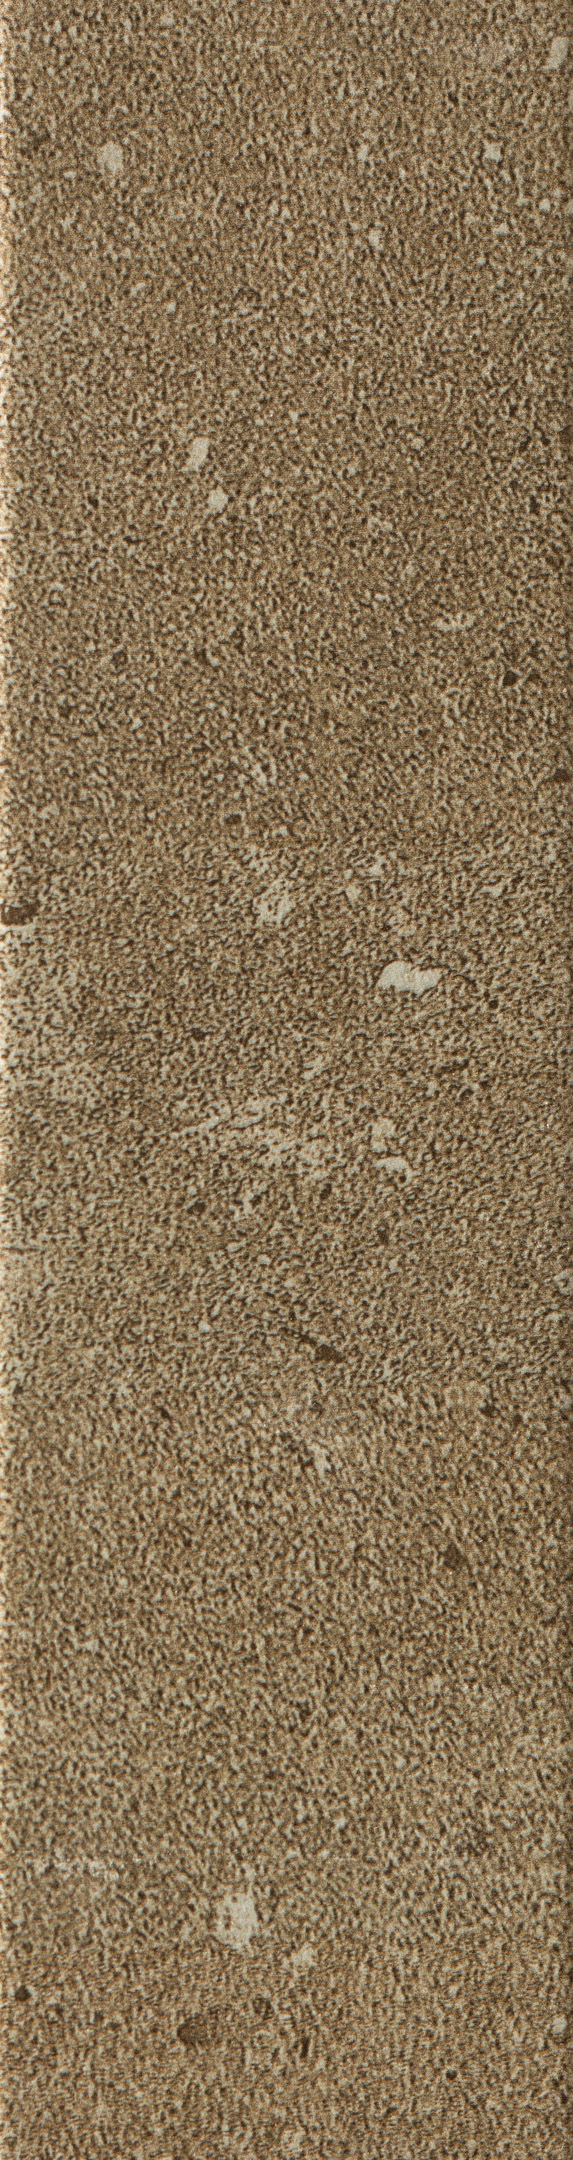 Клинкерная плитка Керамин Юта 3 бежевая 245х65х7 мм (34 шт.=0,54 кв.м) клинкерная плитка юта 4 коричневый 24 5х6 5 керамин